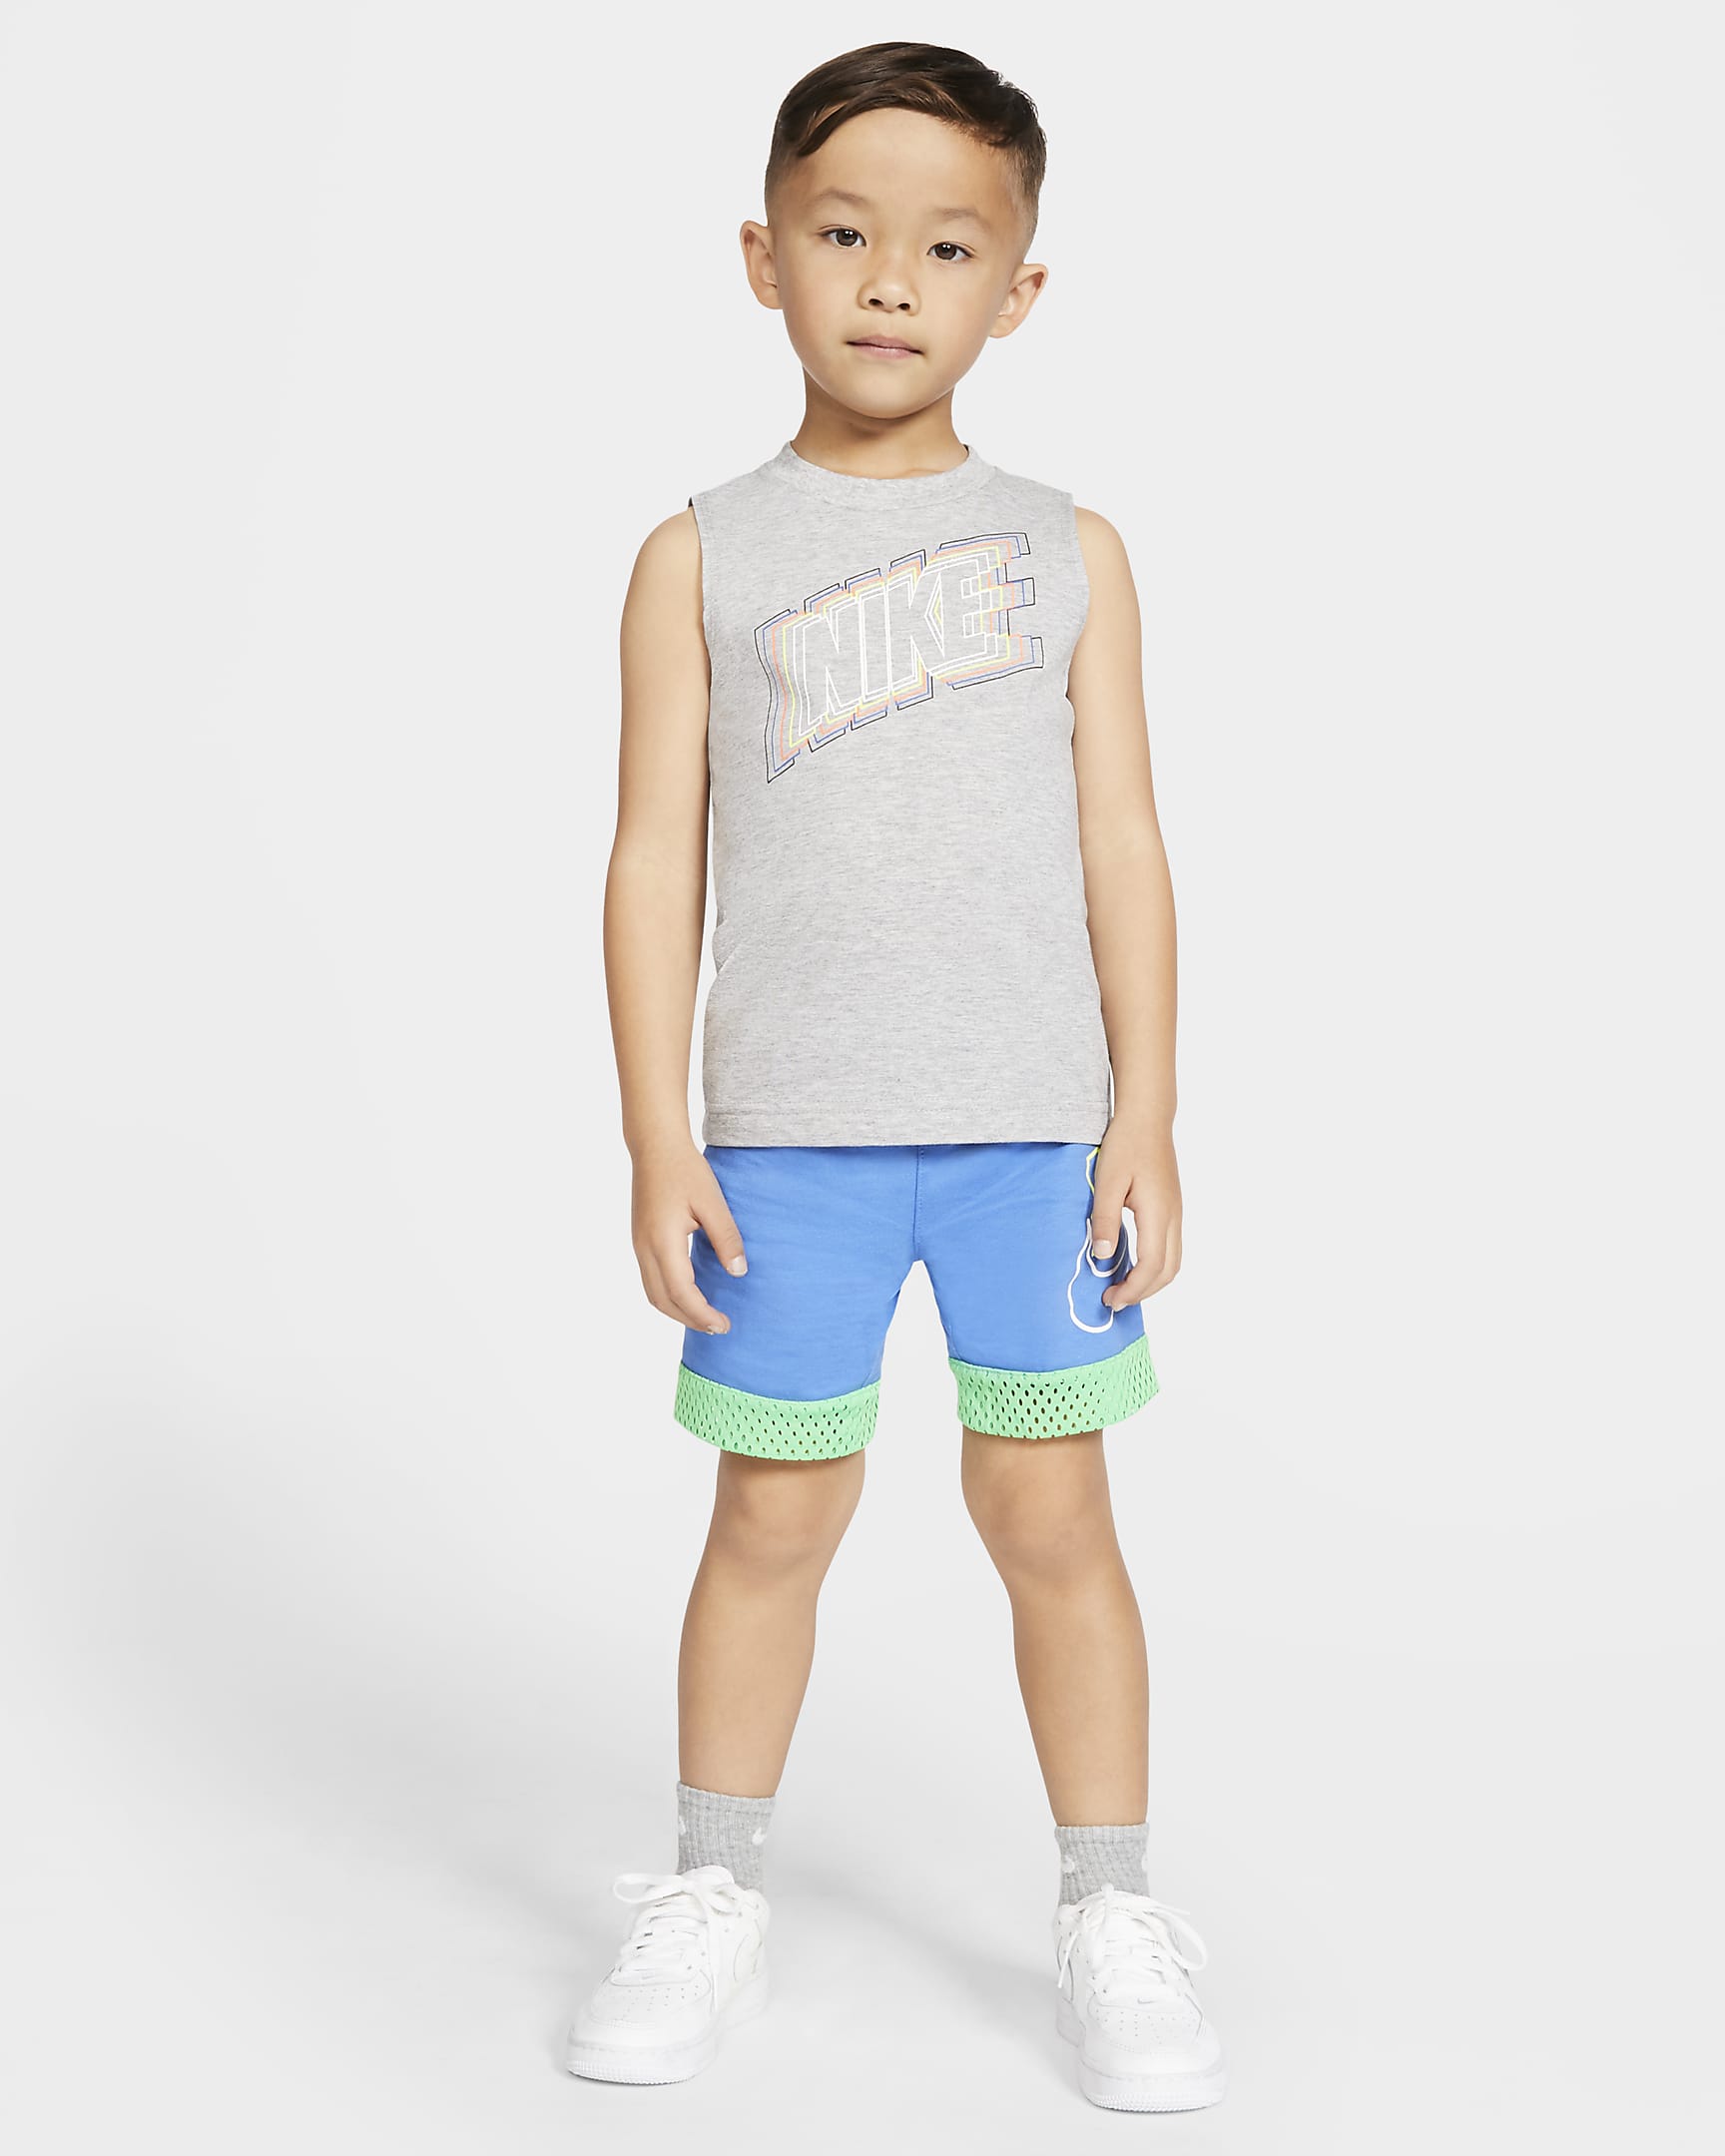 Prenda para la parte superior infantil Nike. Nike.com